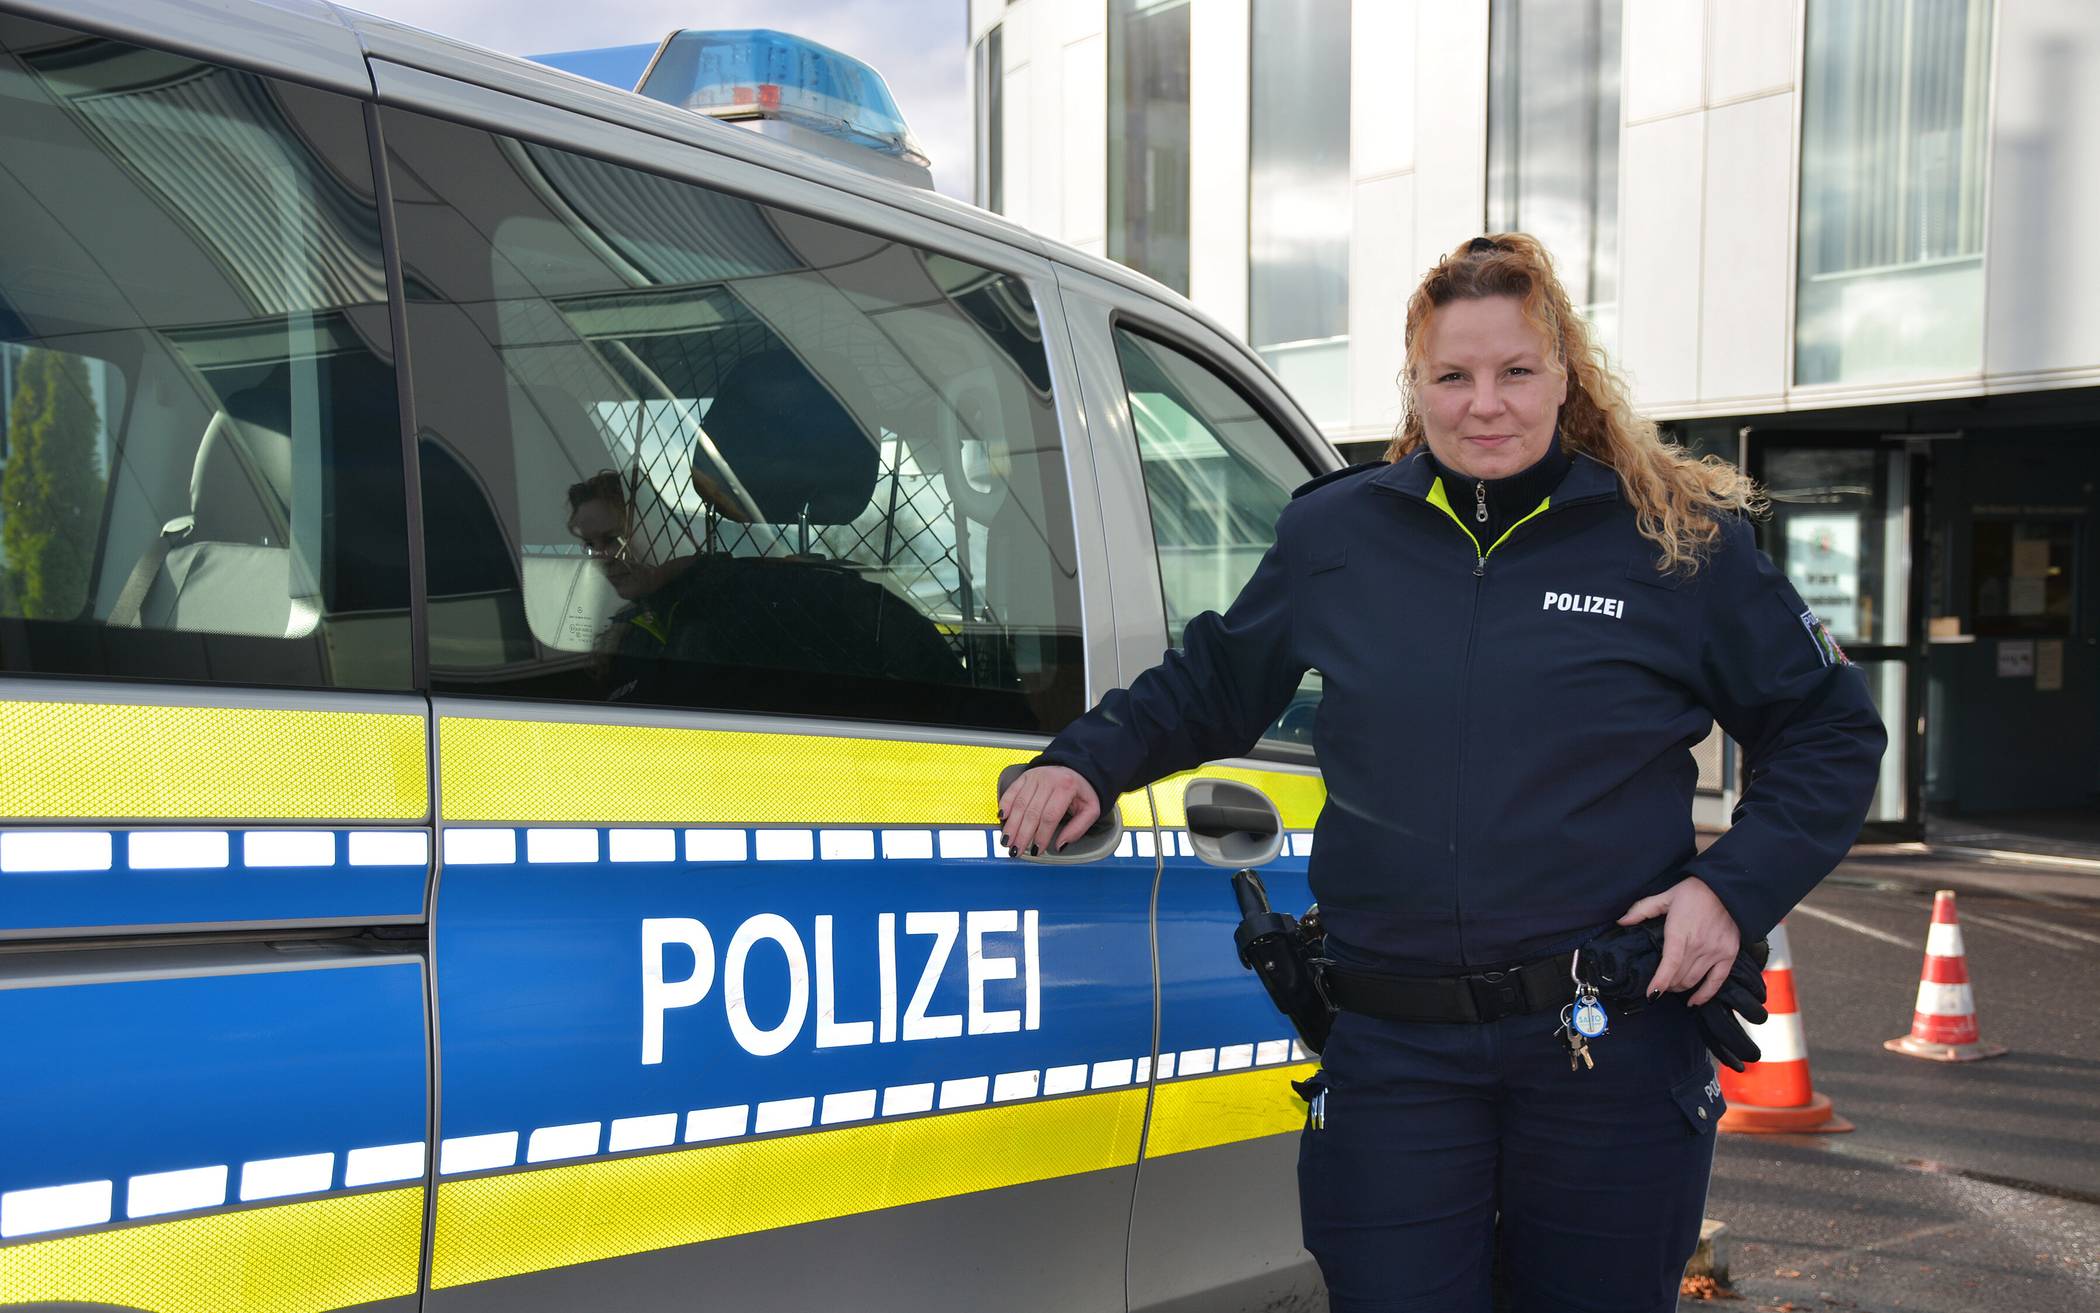  Polizeioberkommissarin Stefanie Schmidt ist neue Bezirkdienstbeamtin in Mettmann. 
  